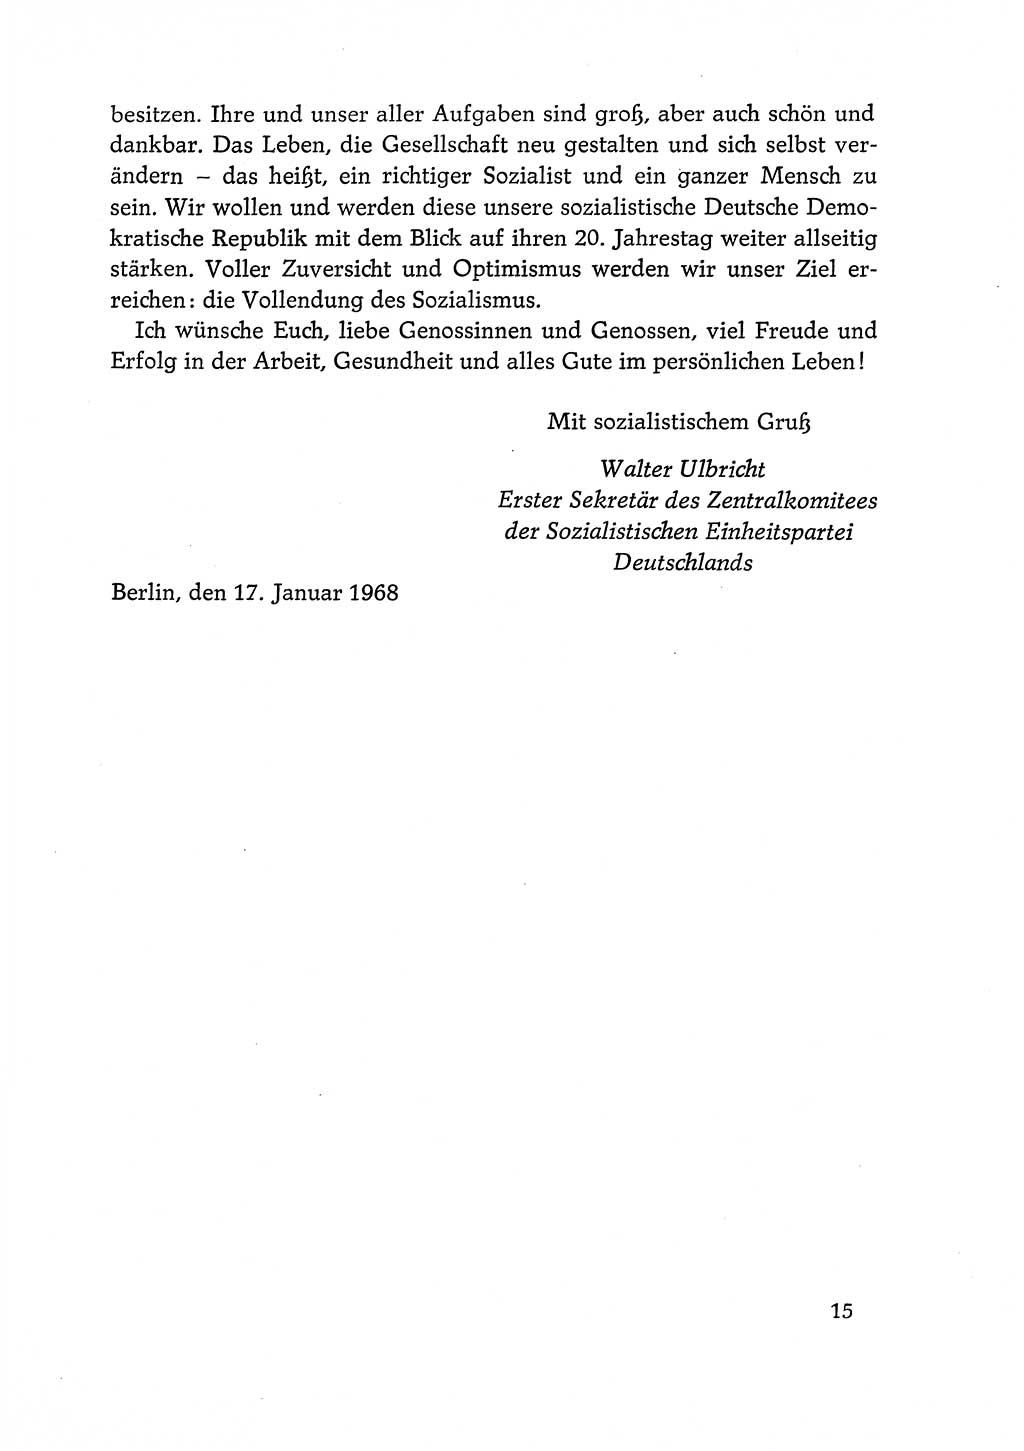 Dokumente der Sozialistischen Einheitspartei Deutschlands (SED) [Deutsche Demokratische Republik (DDR)] 1968-1969, Seite 15 (Dok. SED DDR 1968-1969, S. 15)